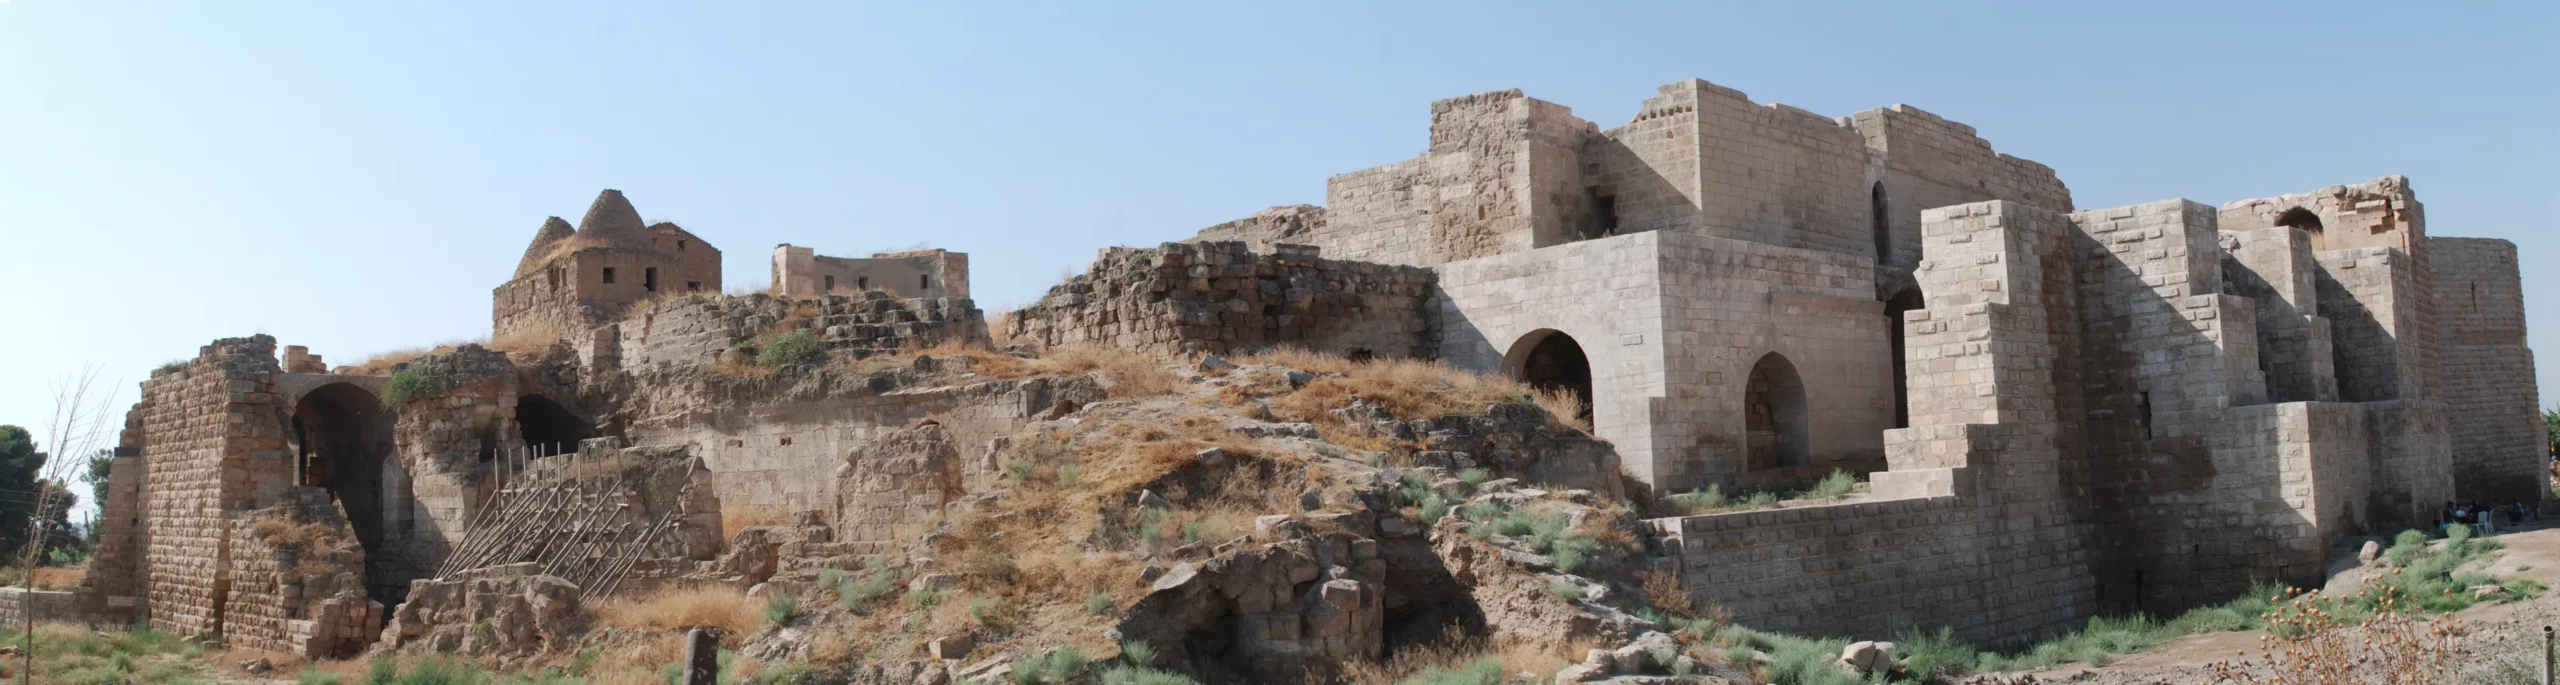 Harran Ancient City 4